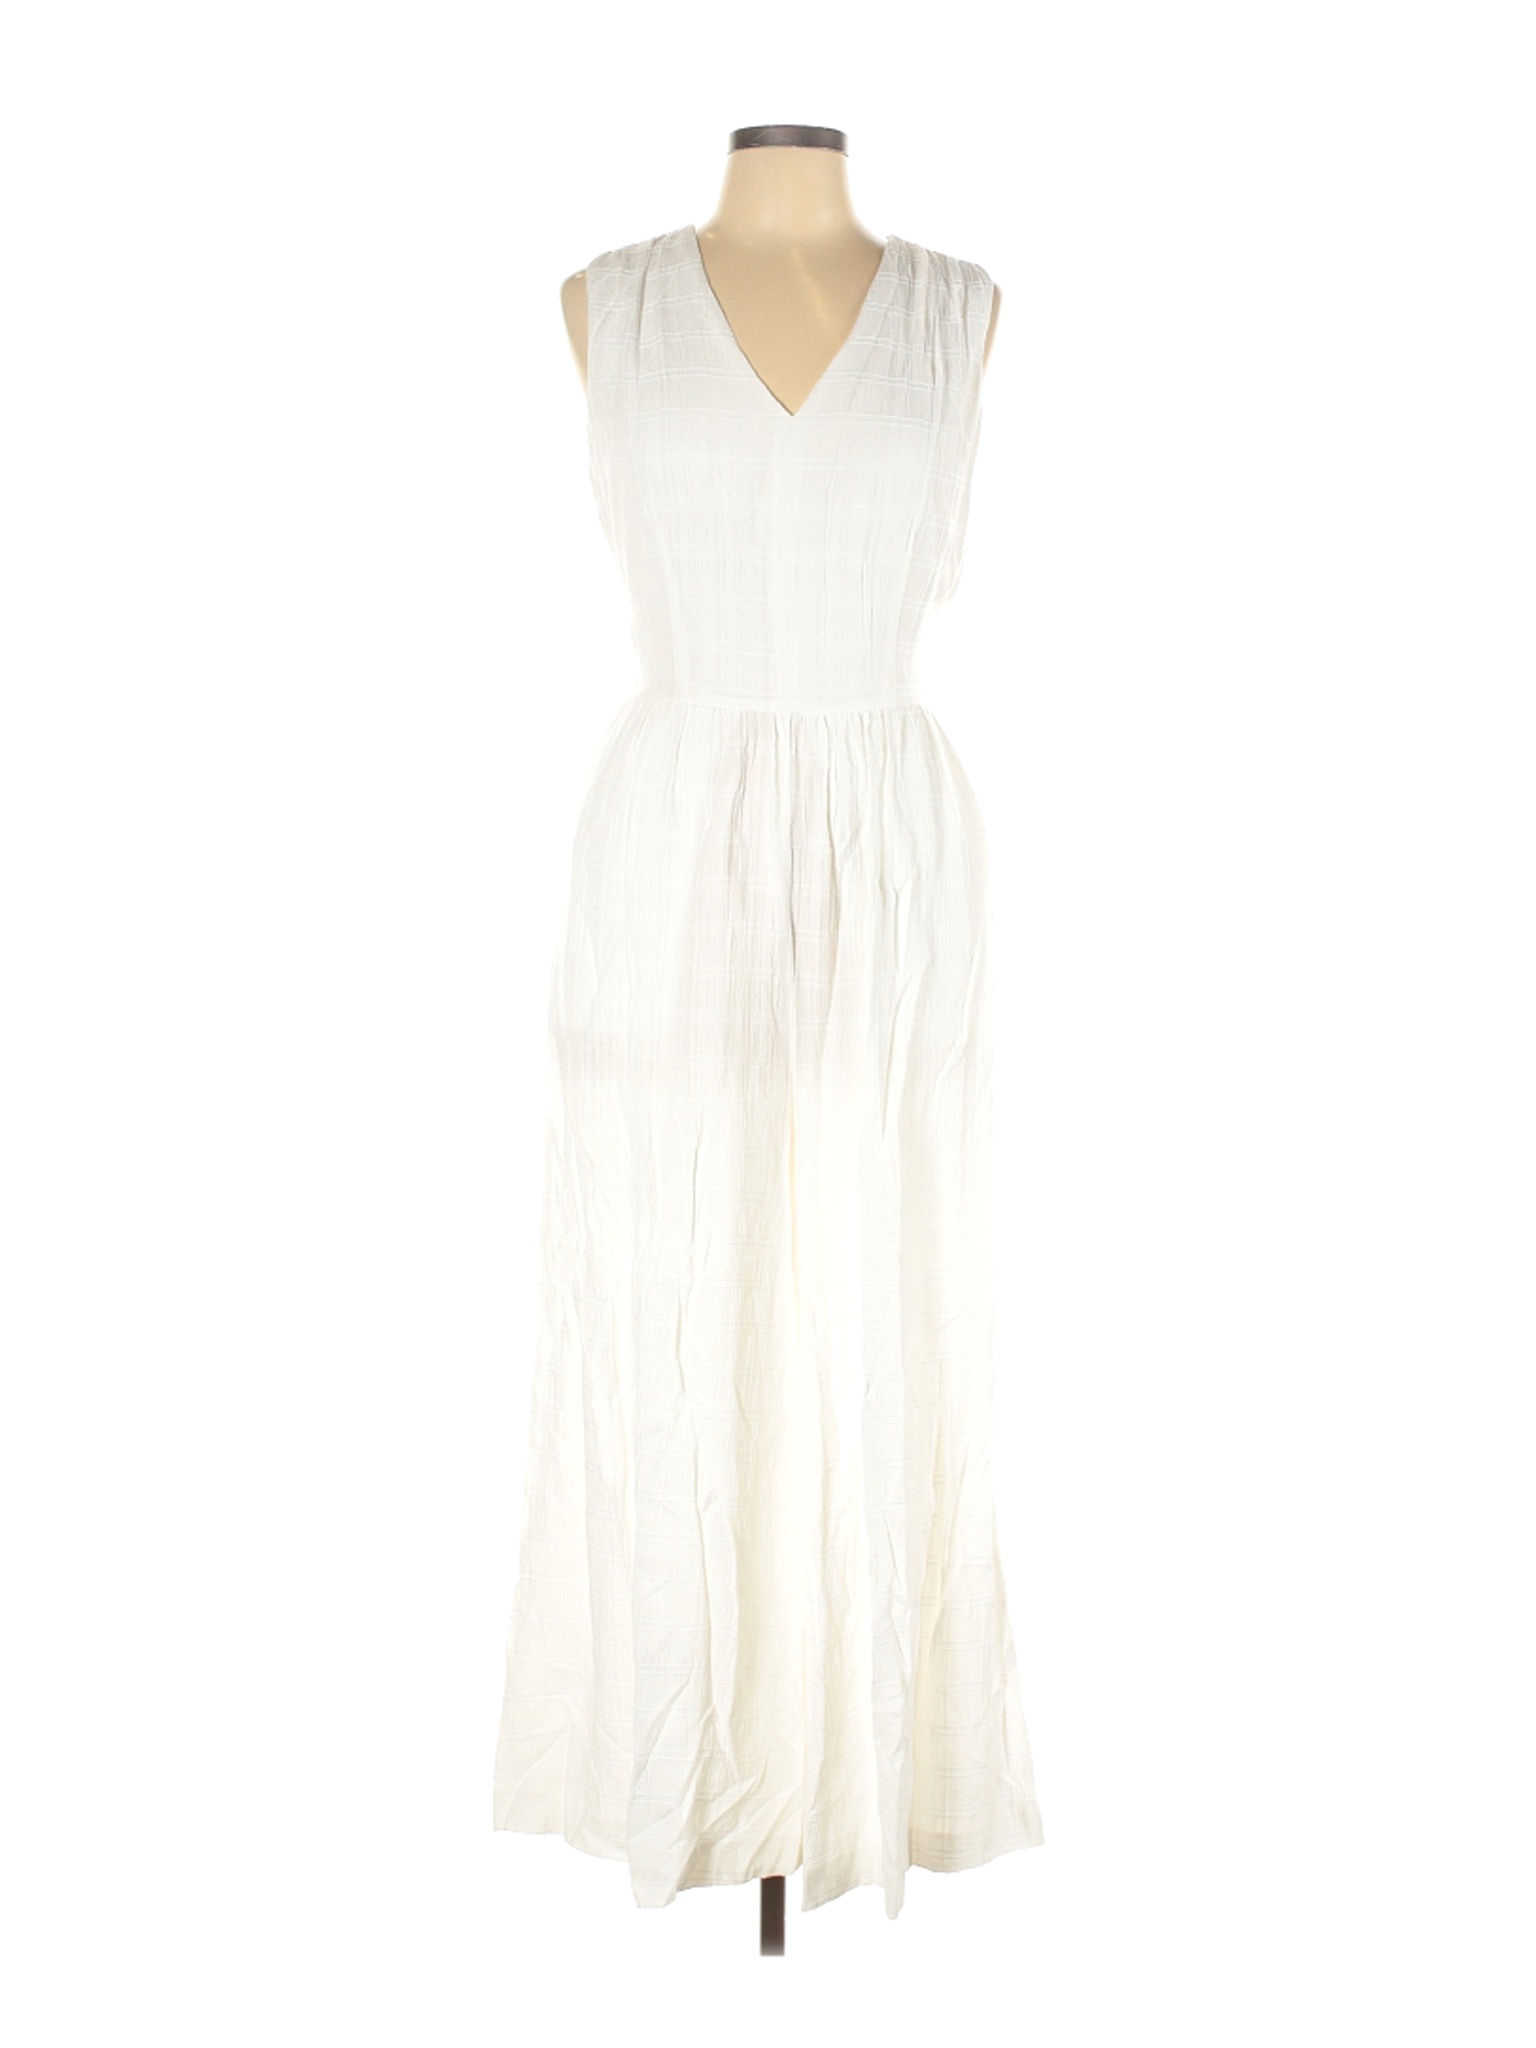 NWT Calvin Klein Women White Jumpsuit 10 | eBay